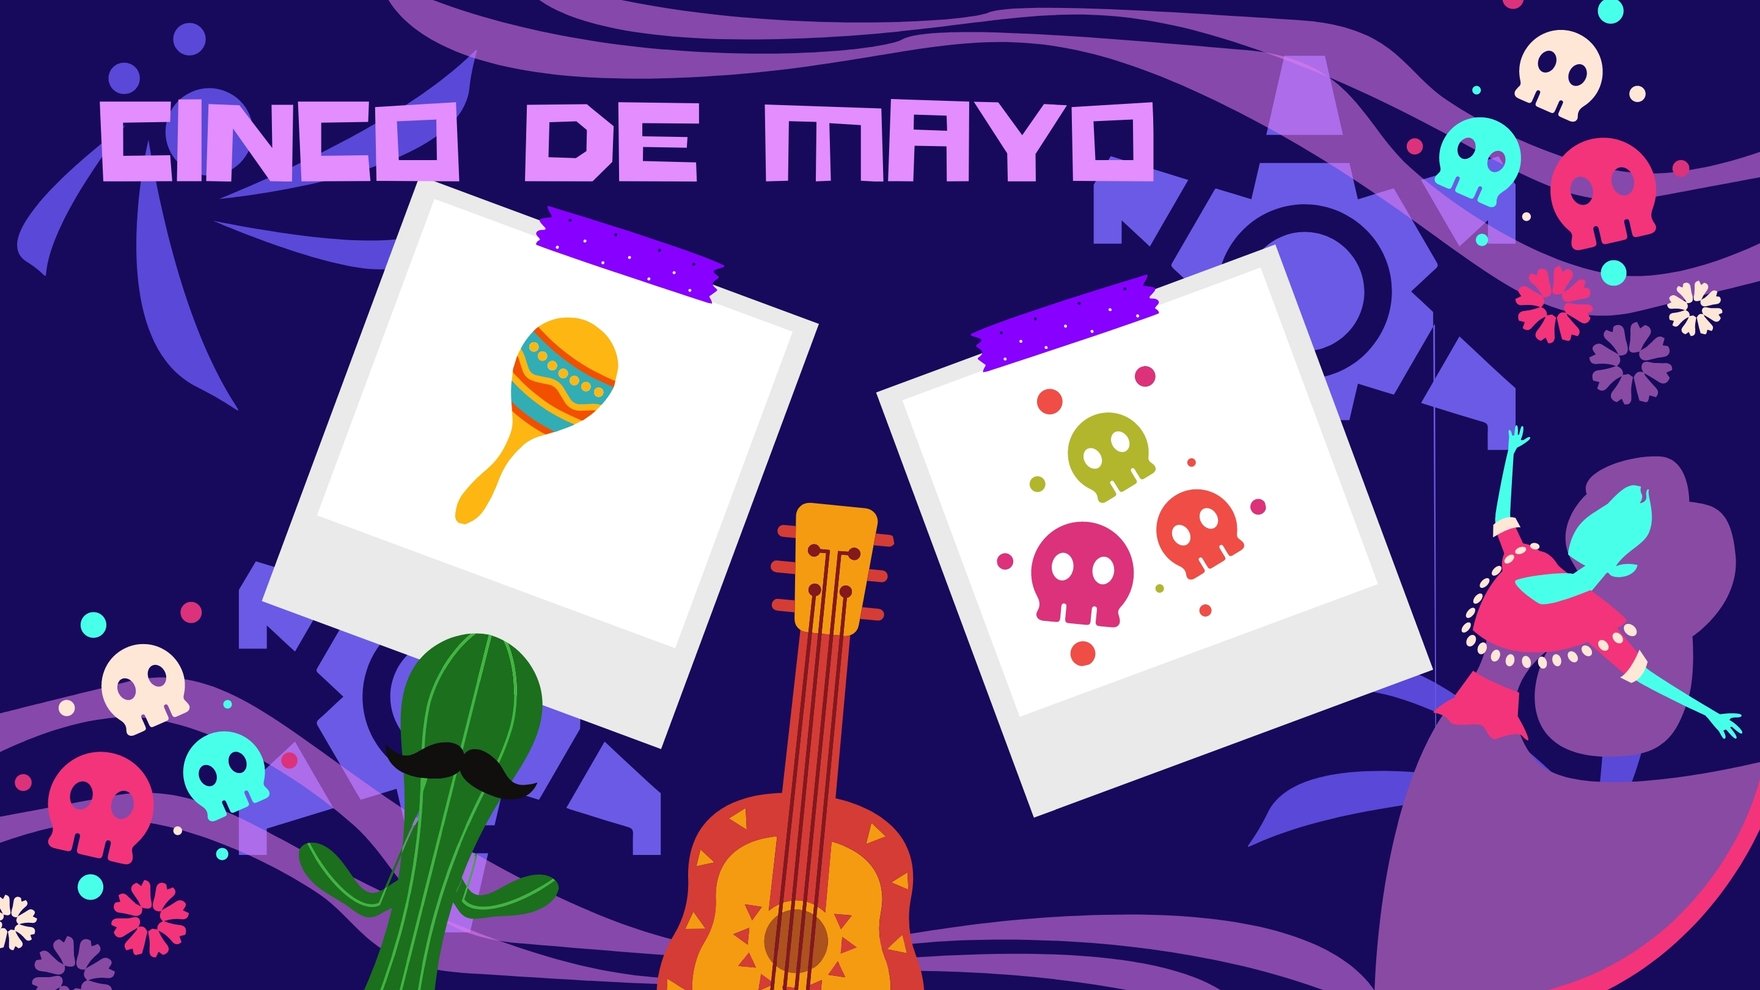 Free Cinco de Mayo Image Background in PDF, Illustrator, PSD, EPS, SVG, JPG, PNG